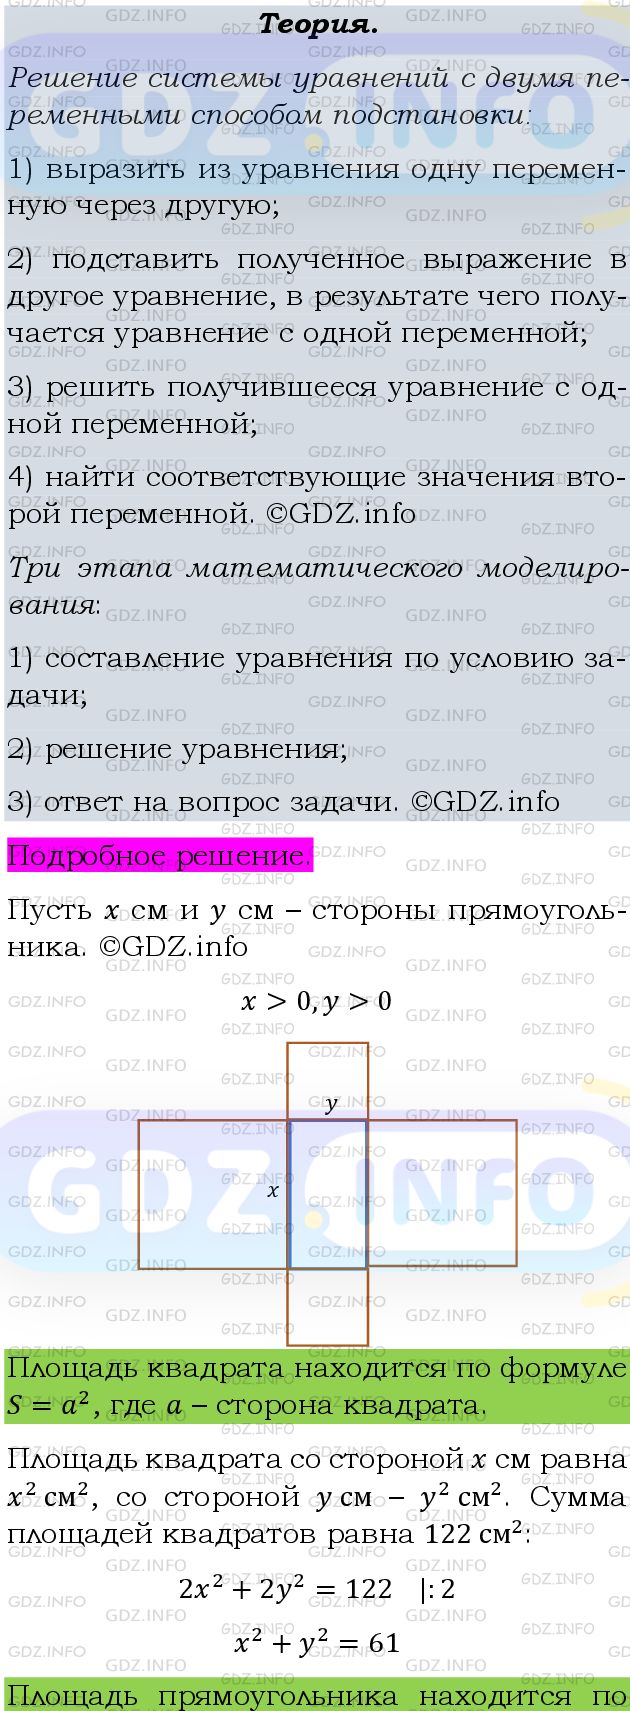 Фото подробного решения: Номер задания №427 из ГДЗ по Алгебре 9 класс: Макарычев Ю.Н.